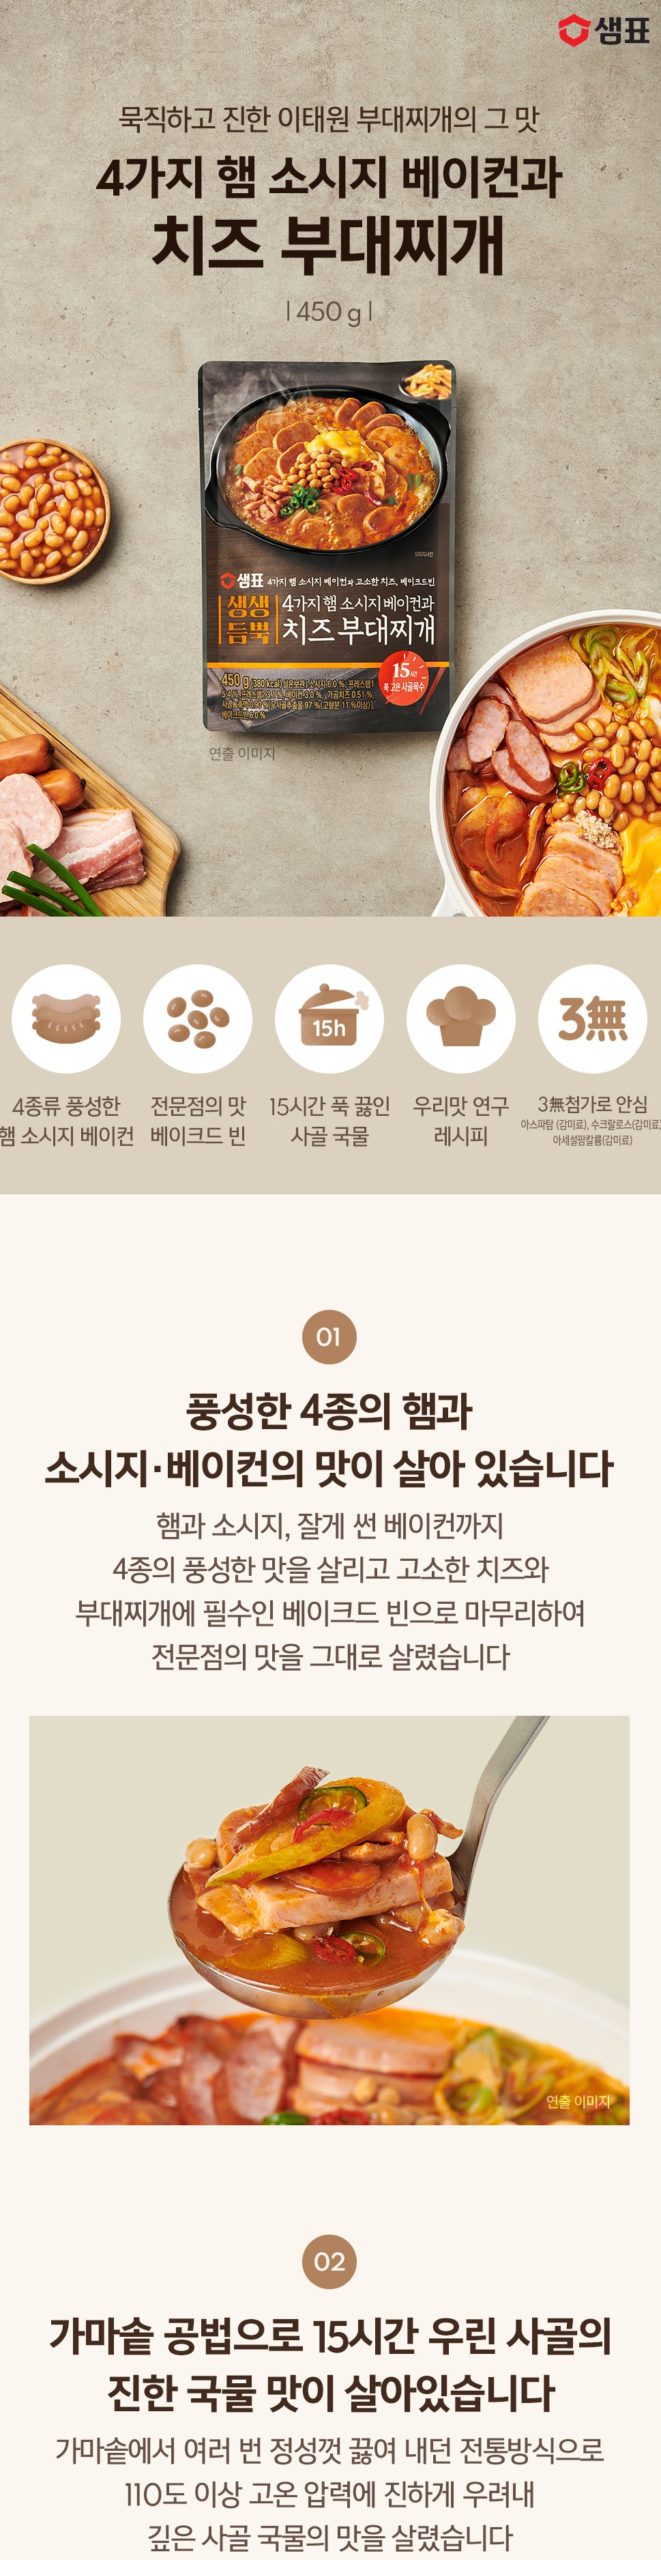 韓國食品-[Sempio] Cheese Ham&Sausage Stew 450g